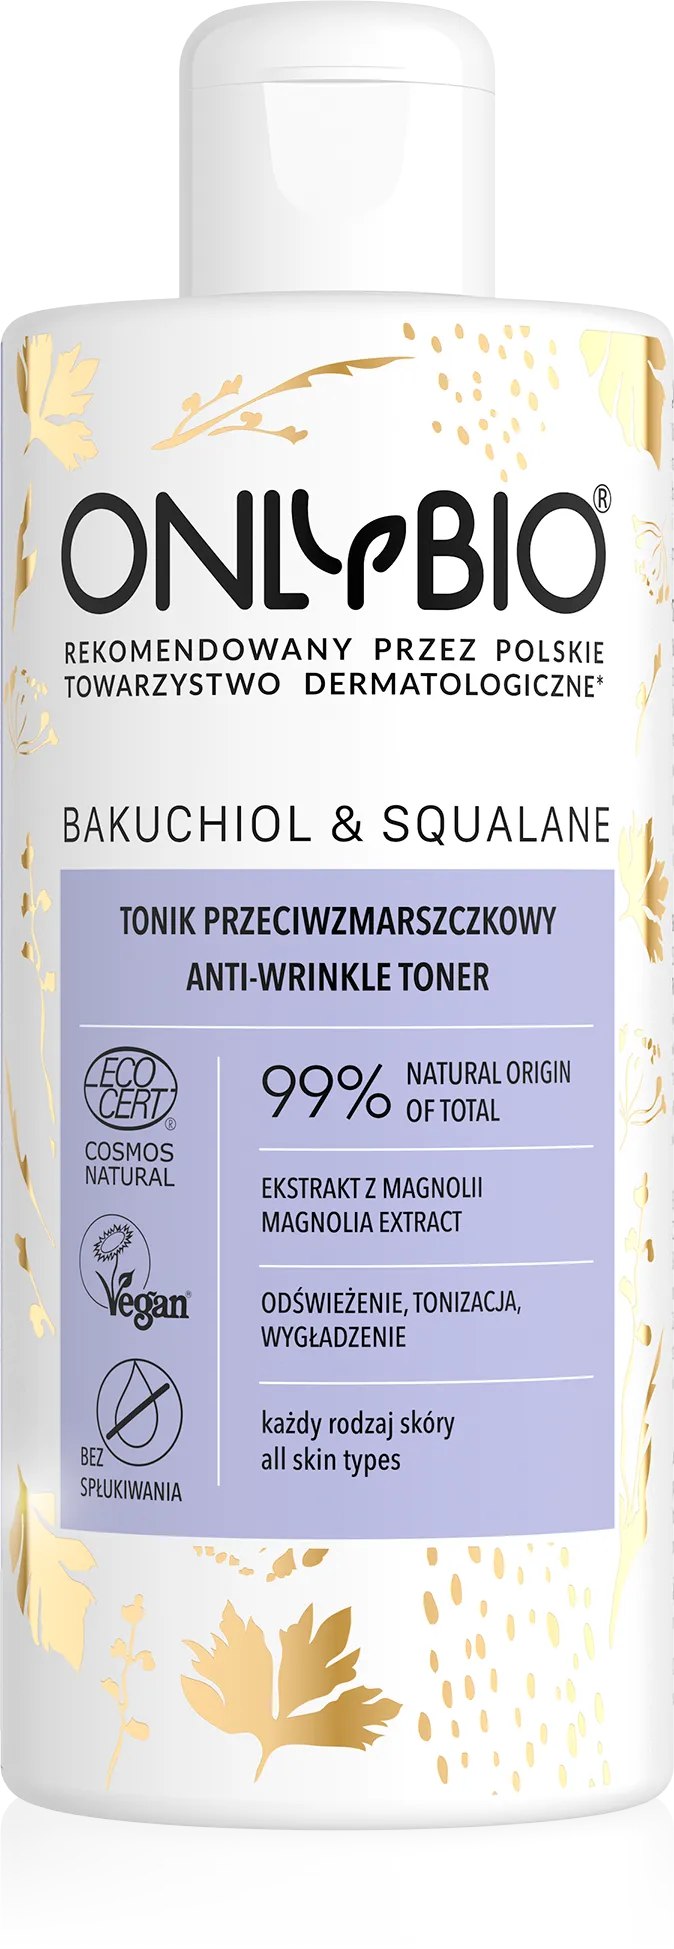 OnlyBio Bakuchiol & Skwalan tonik przeciwzmarszczkowy, 300 ml